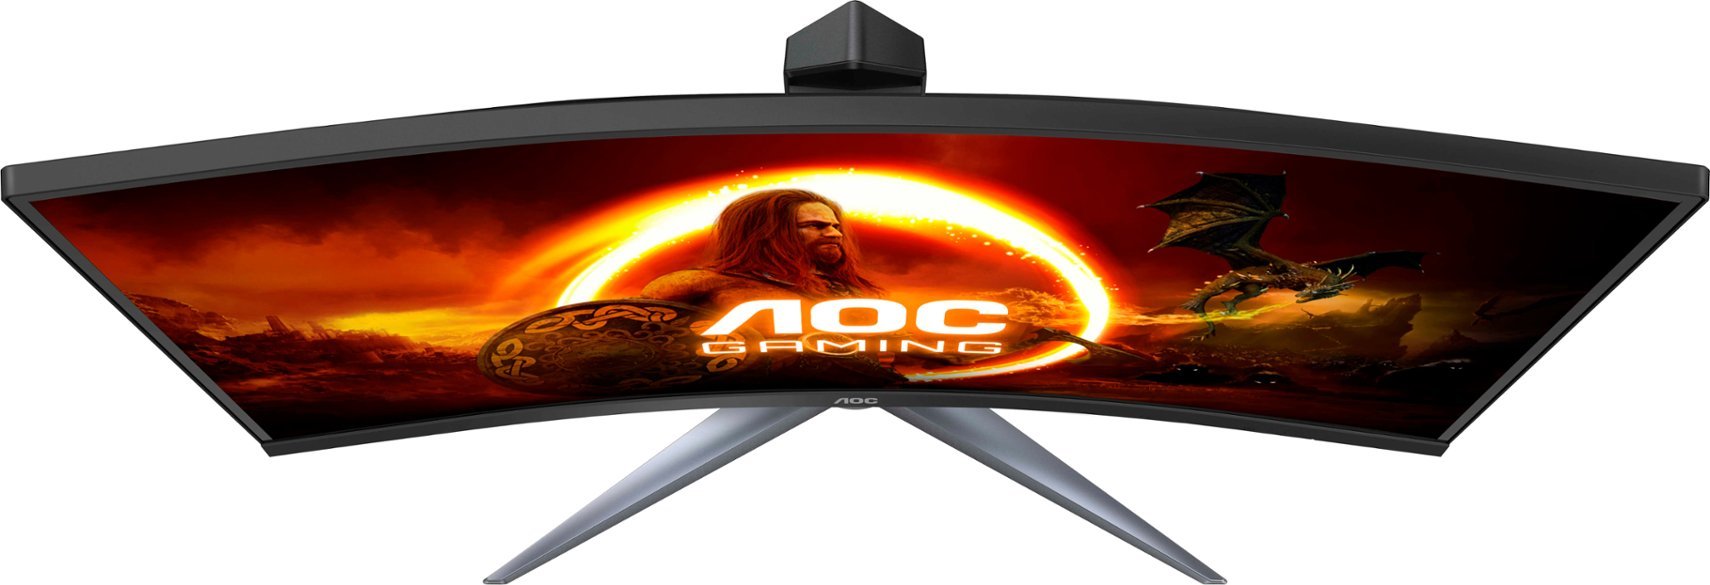 AOC C24G2-B 23.8" 1920 x 1080 144Hz Gaming Monitor - Certified Refurbished